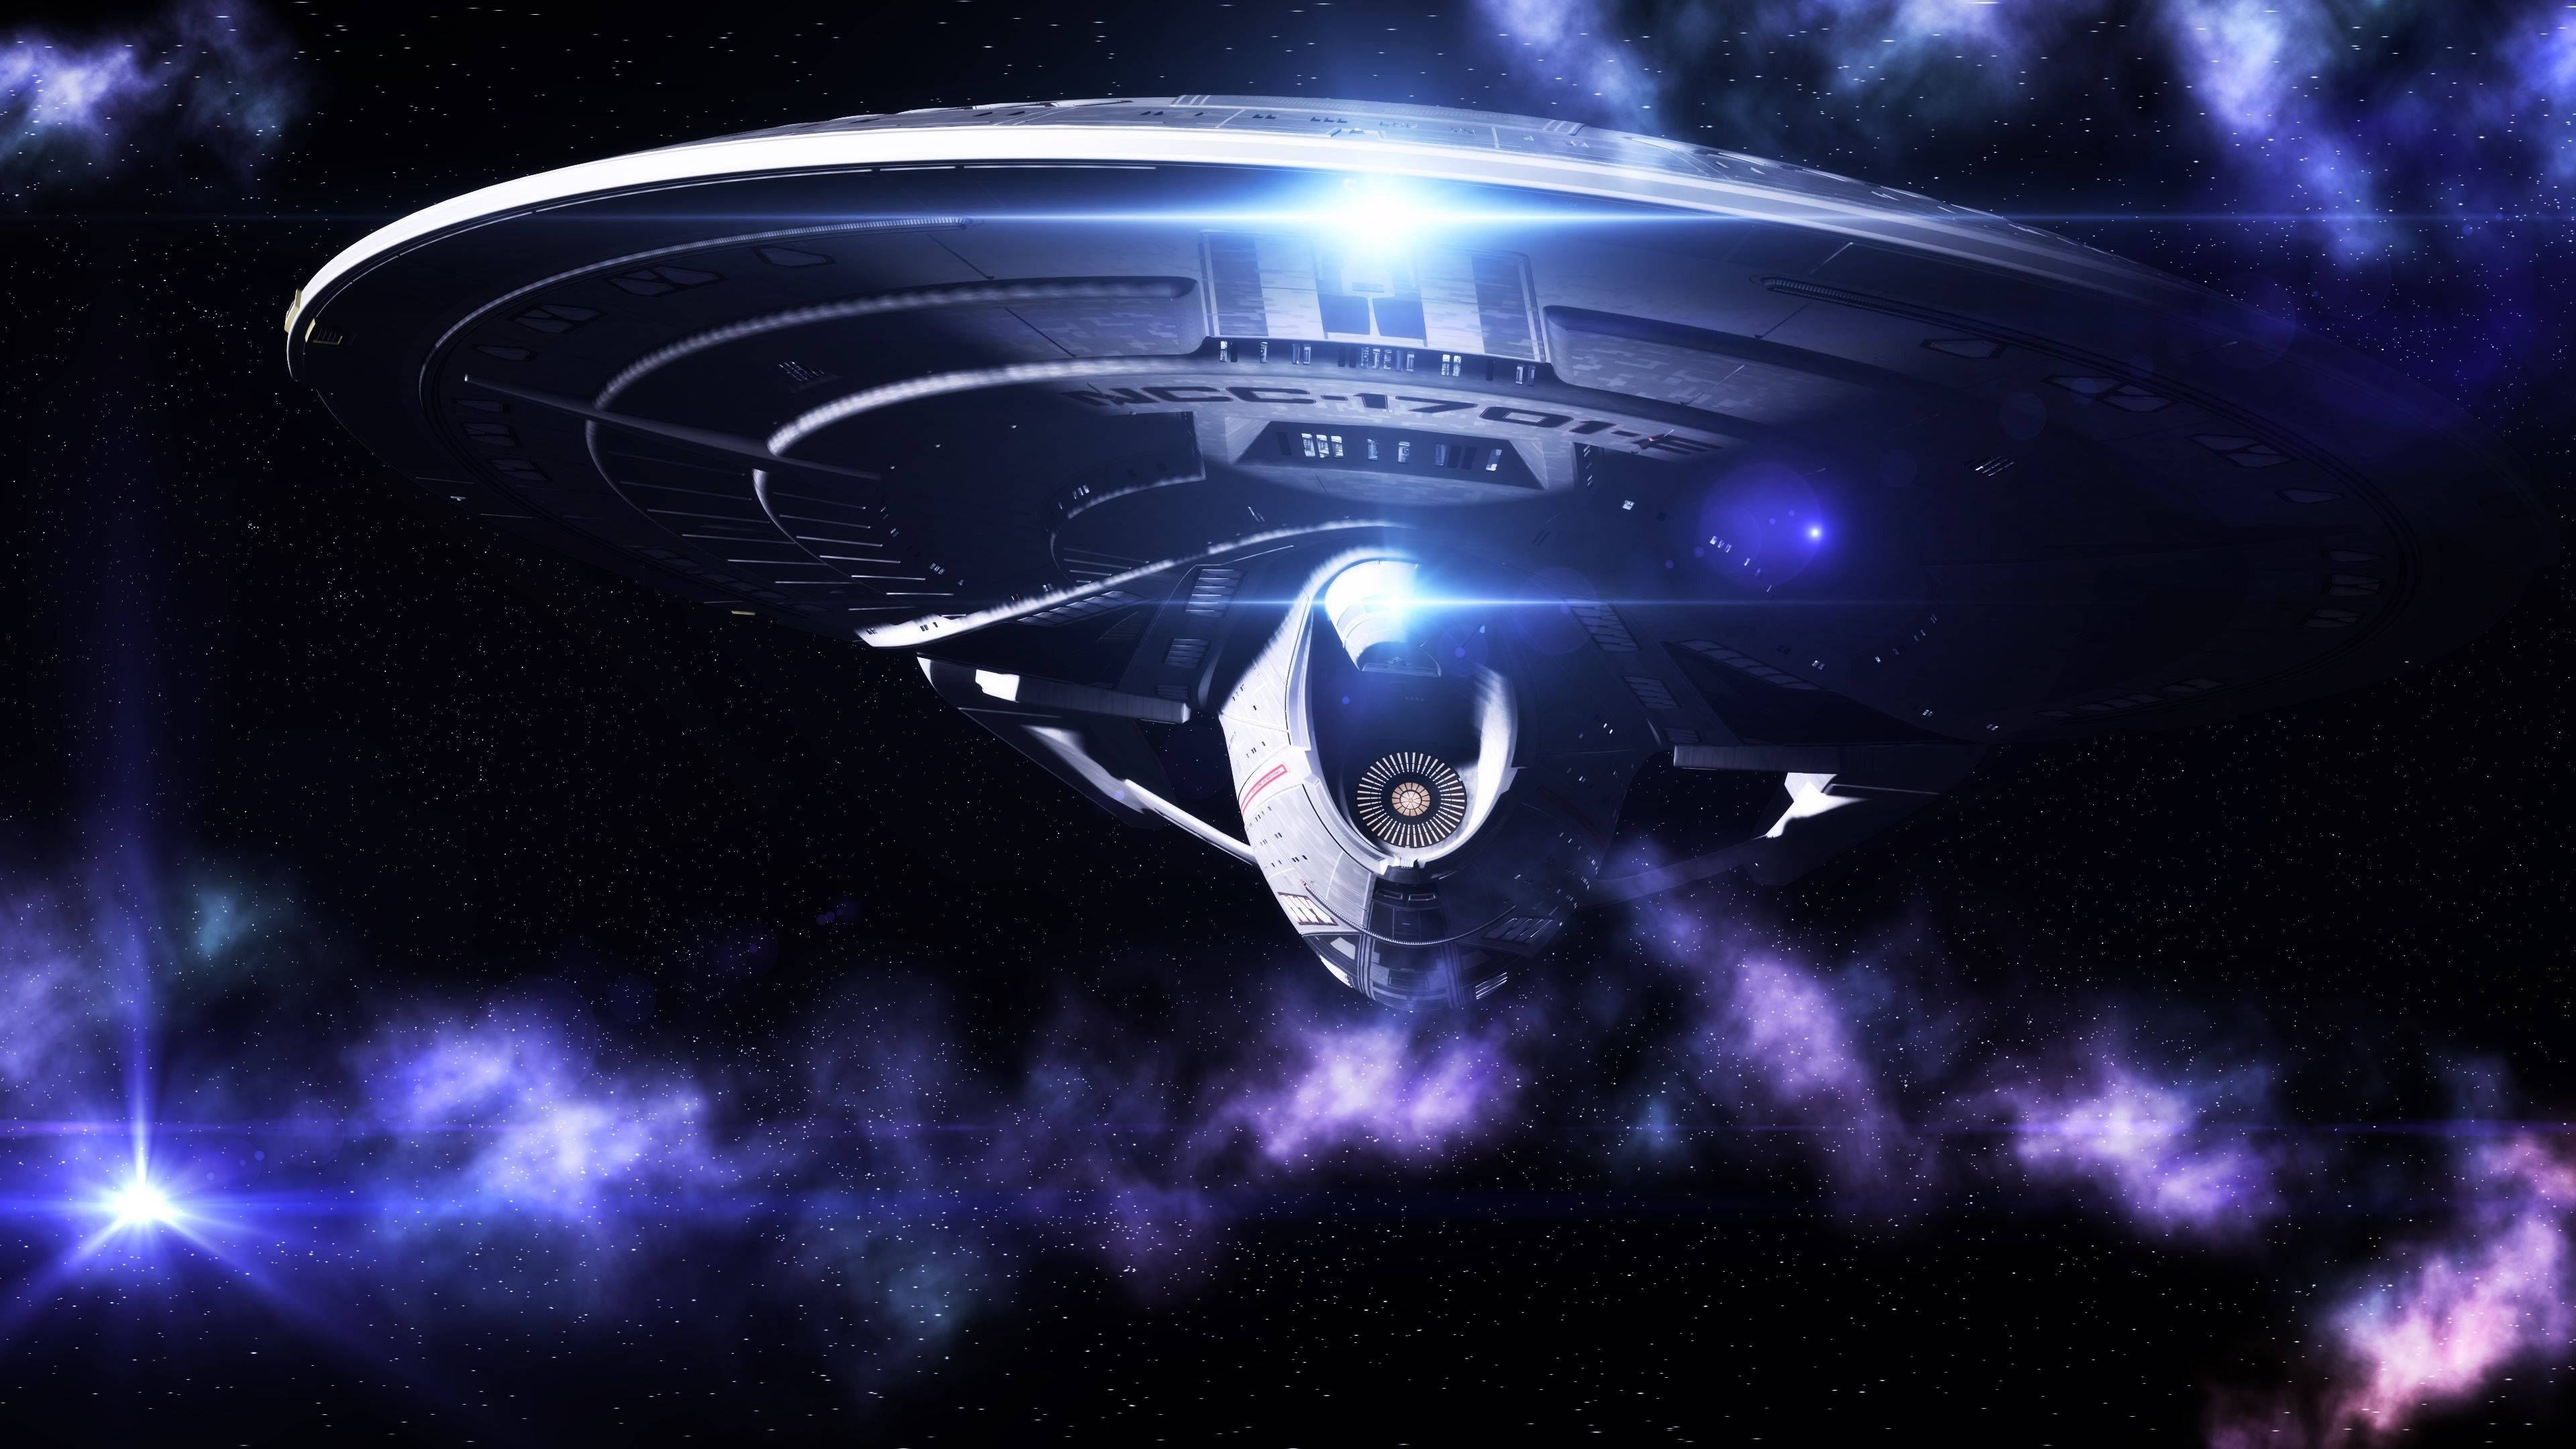 Aesthetic Star Trek Ship Background